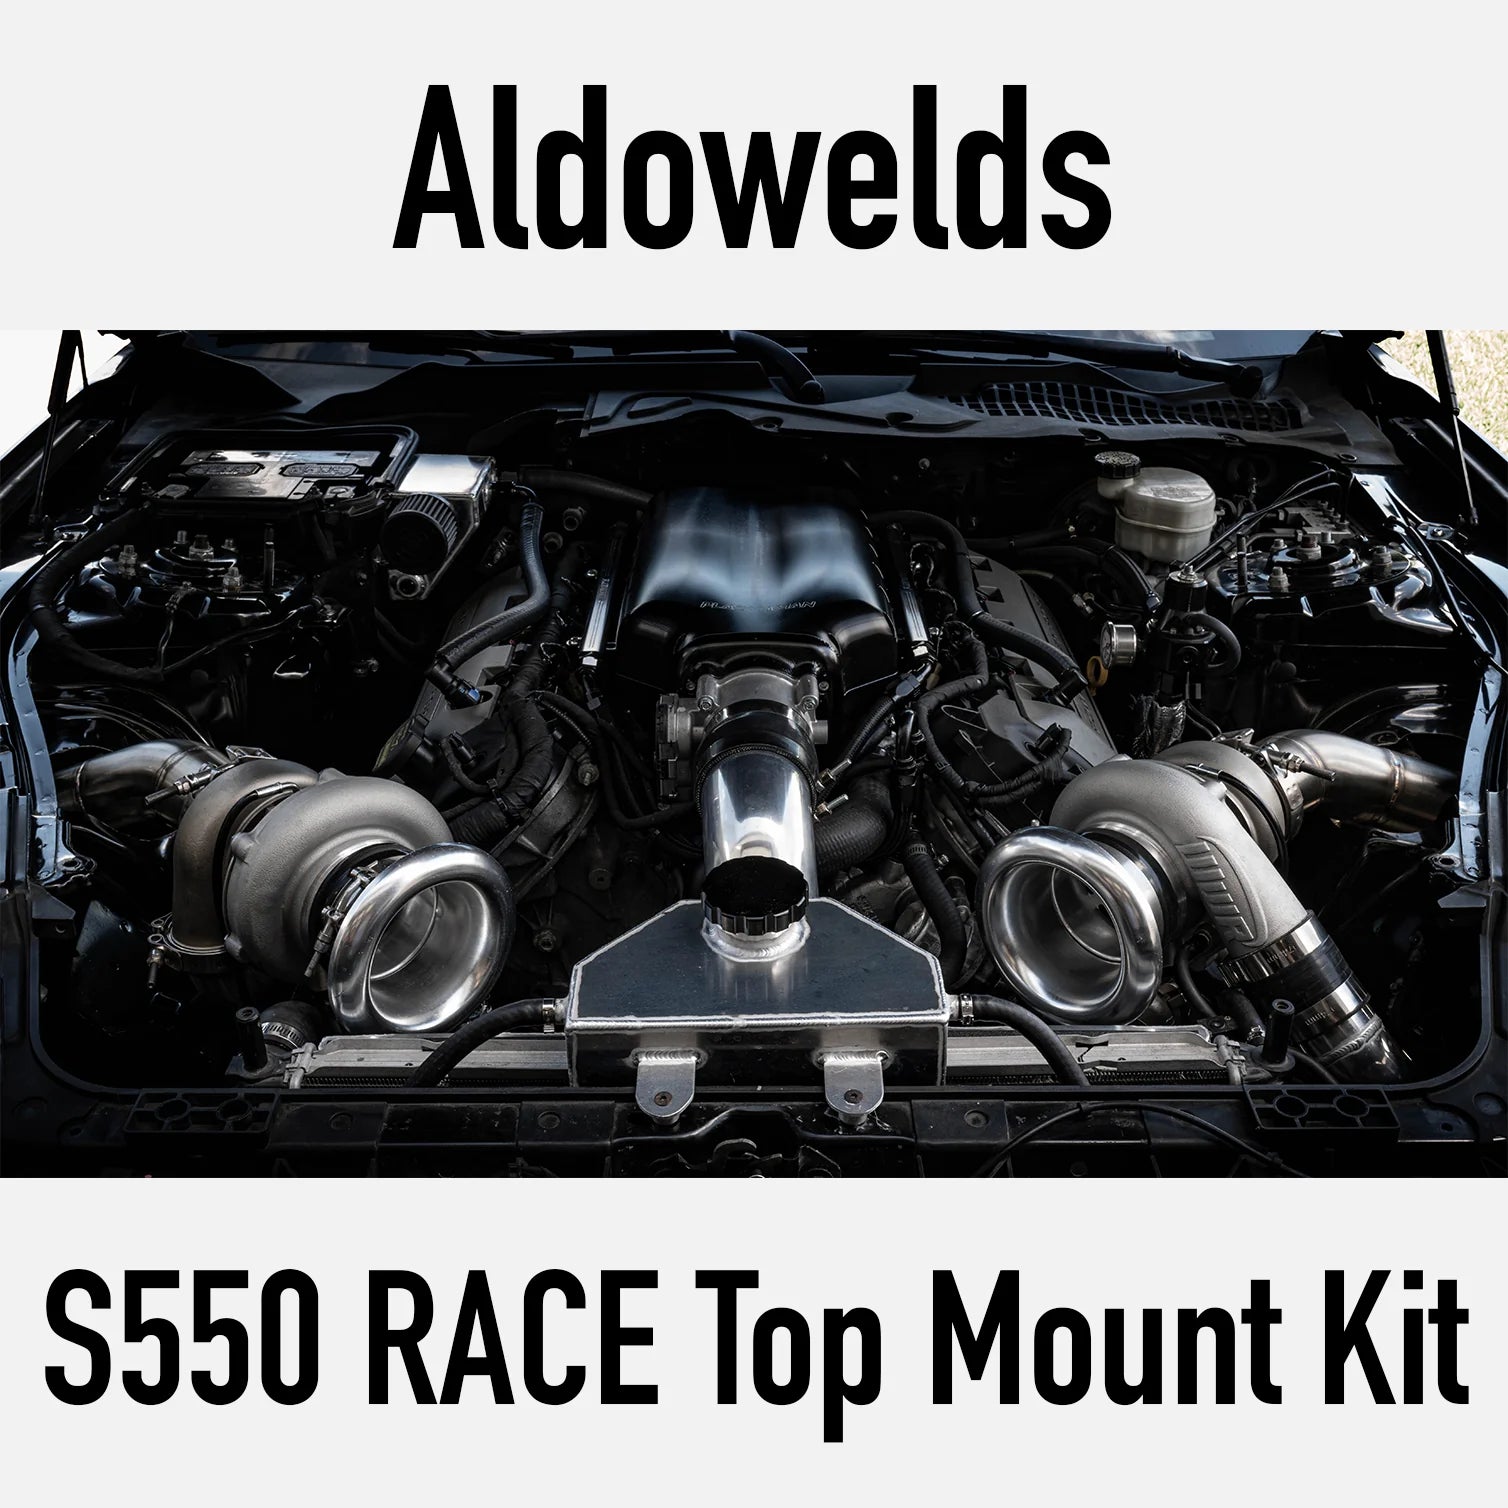 aldowelds-s550-race-top-mount-twin-turbo-kit-1